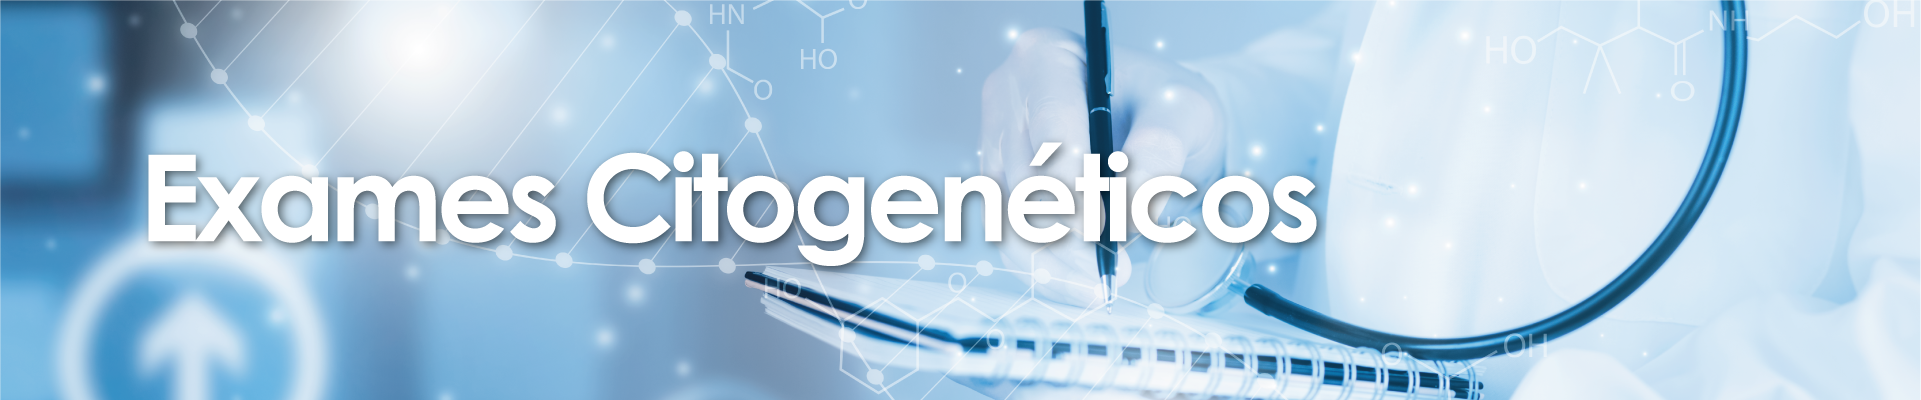 Exames Citogenéticos Cariótipos